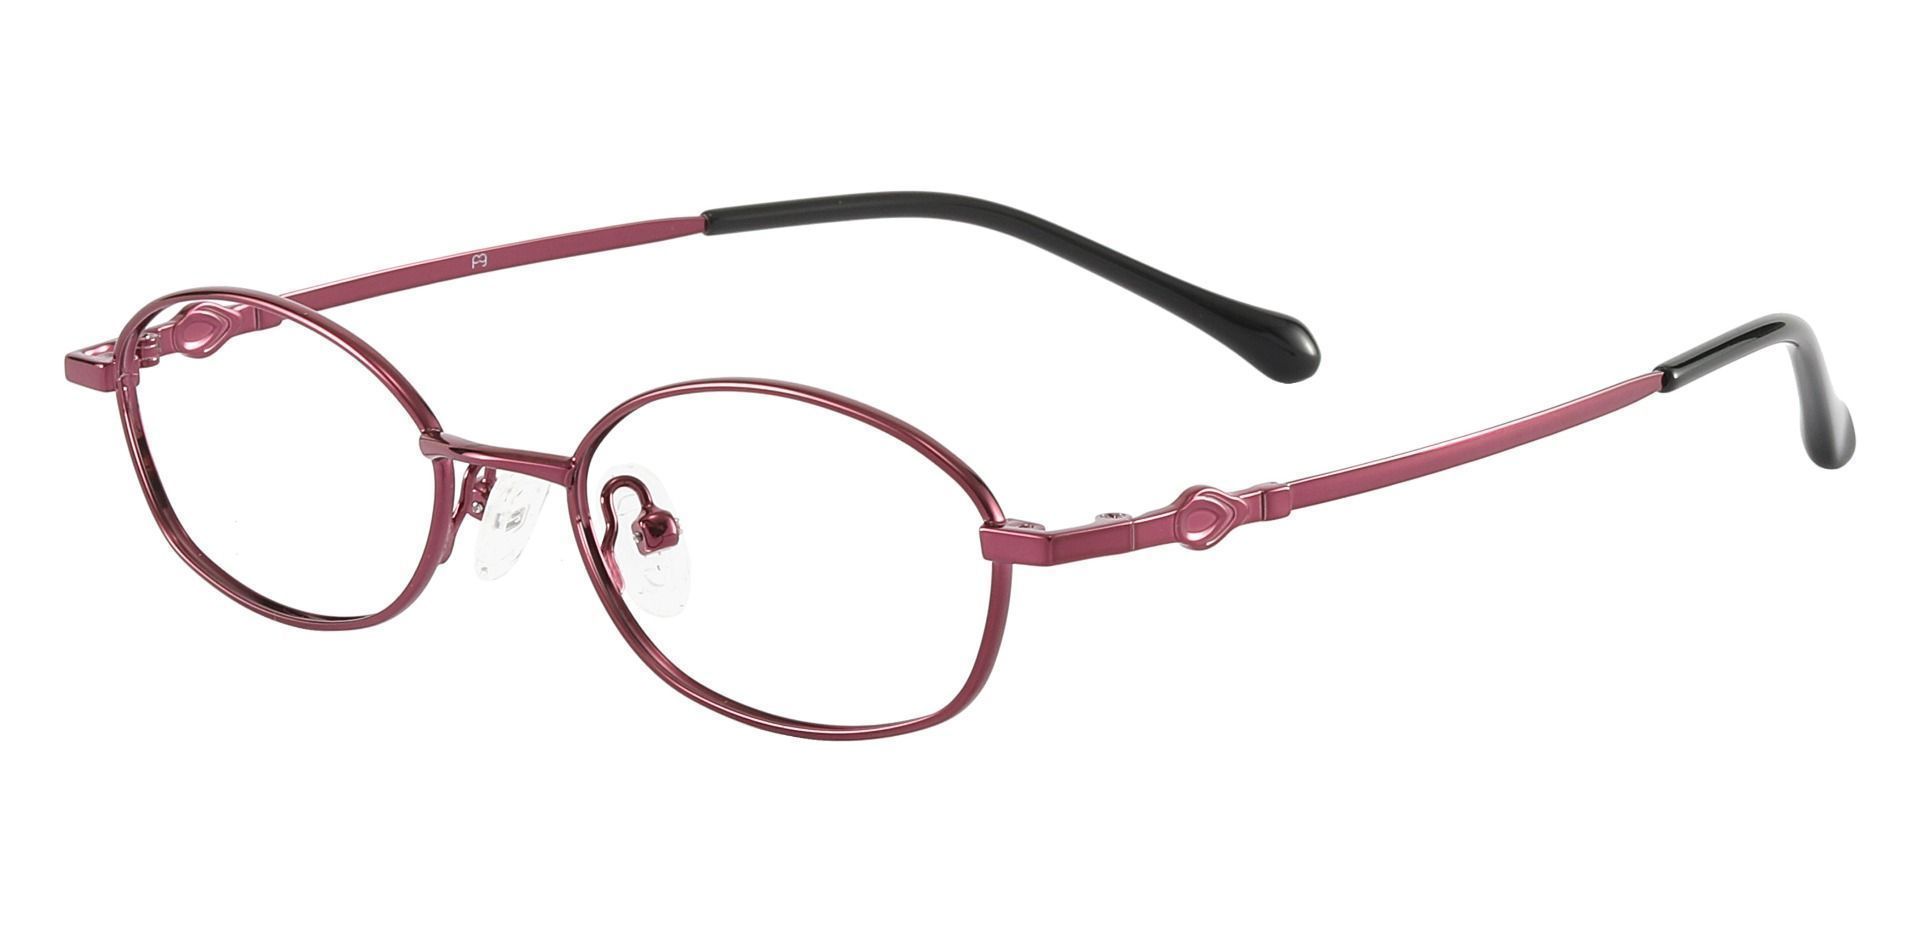 Fletcher Oval Non-Rx Glasses - Purple